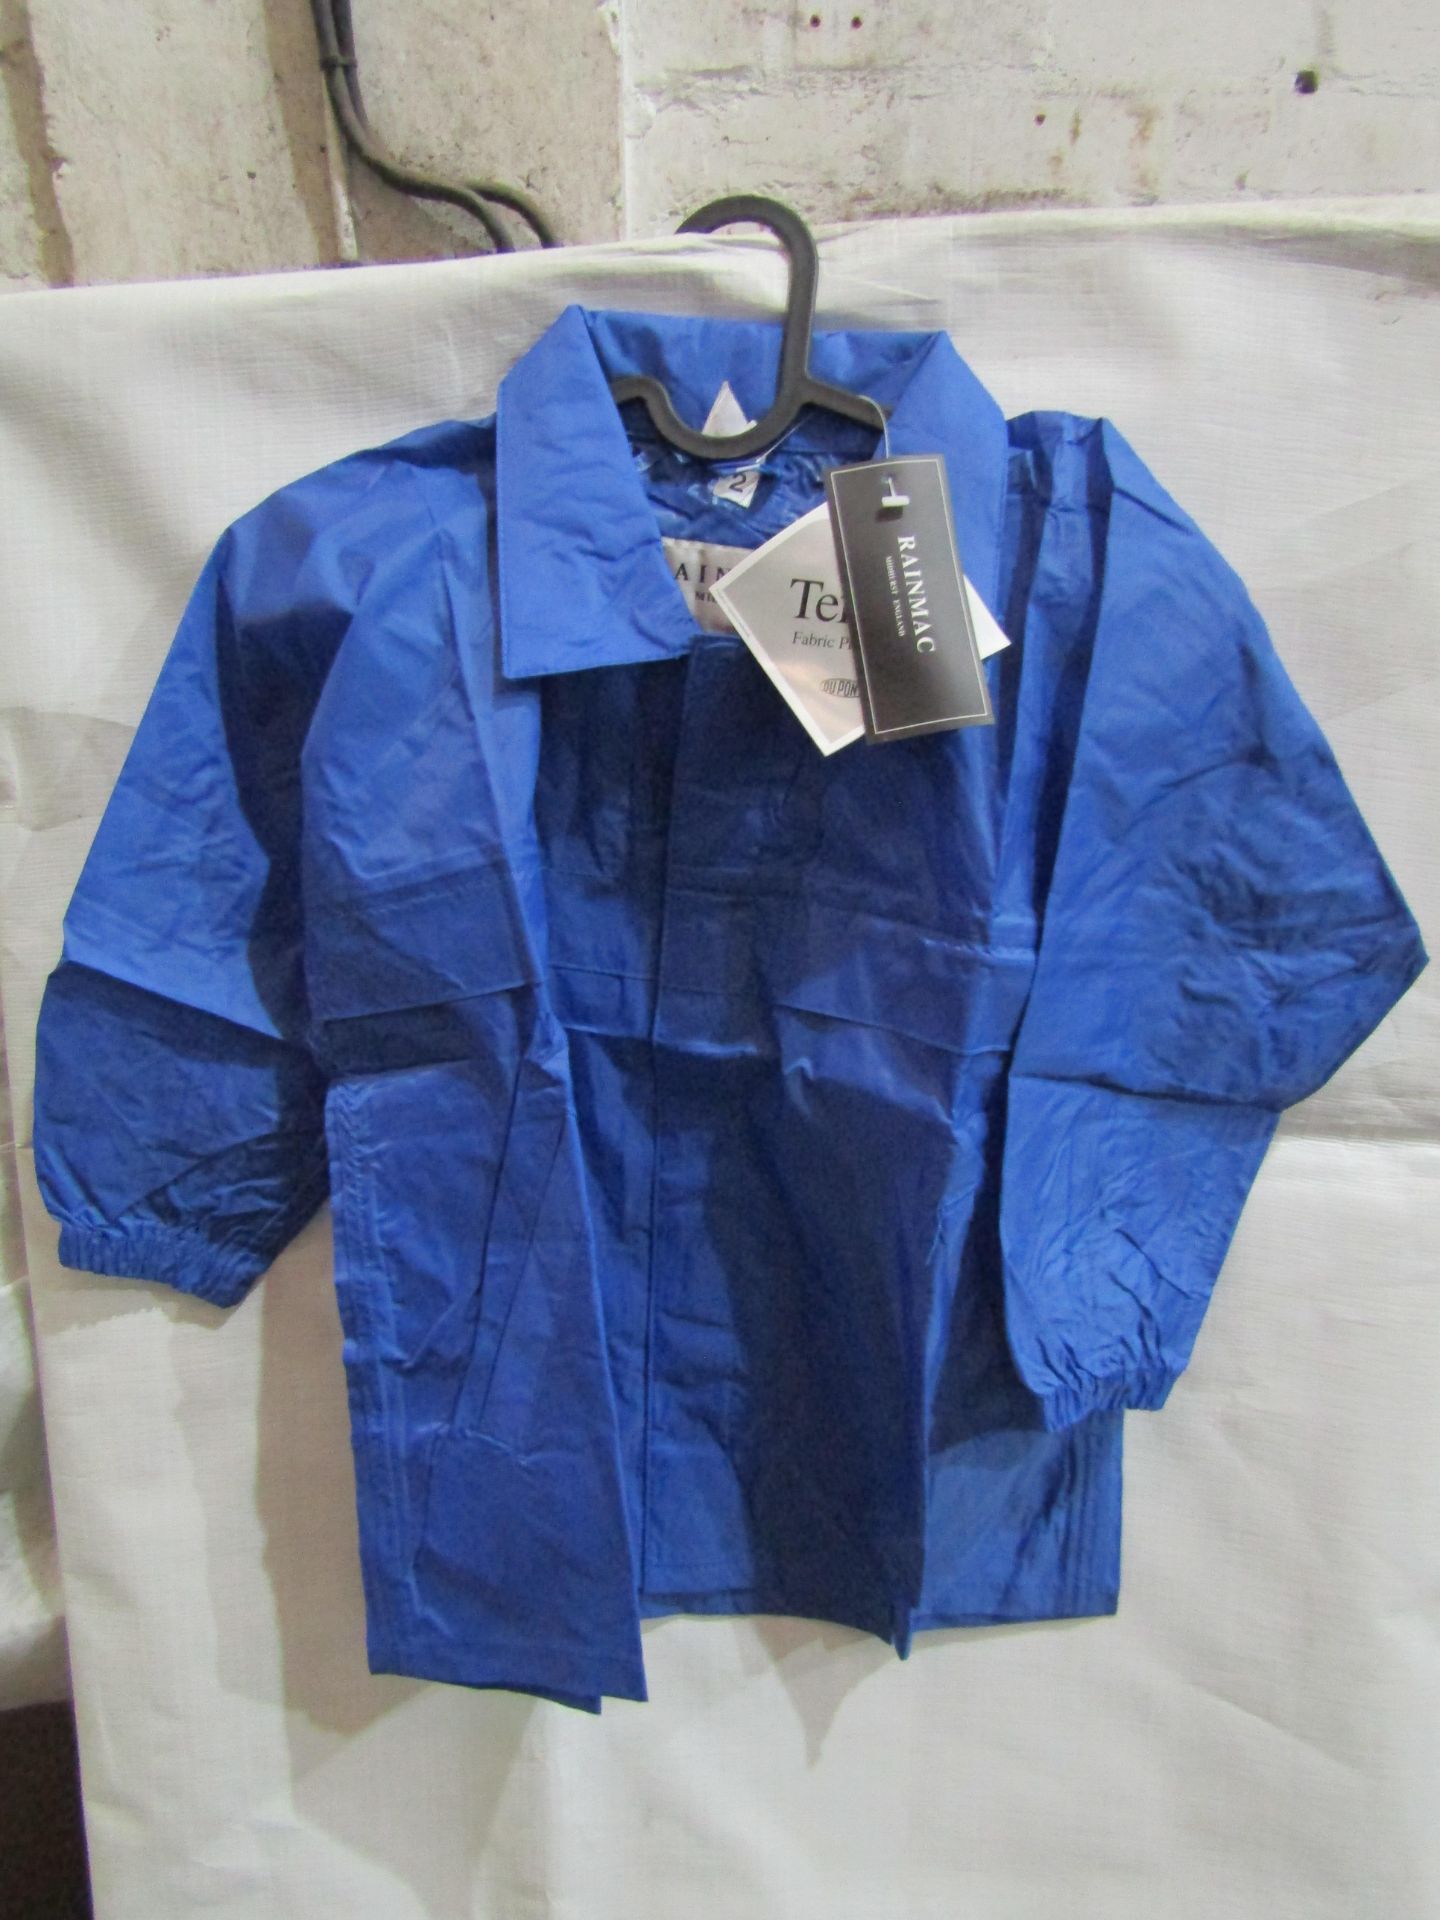 Rainmac Ladies Blue Thin Rain Coat, Size: 14 - Unused & Packaged.